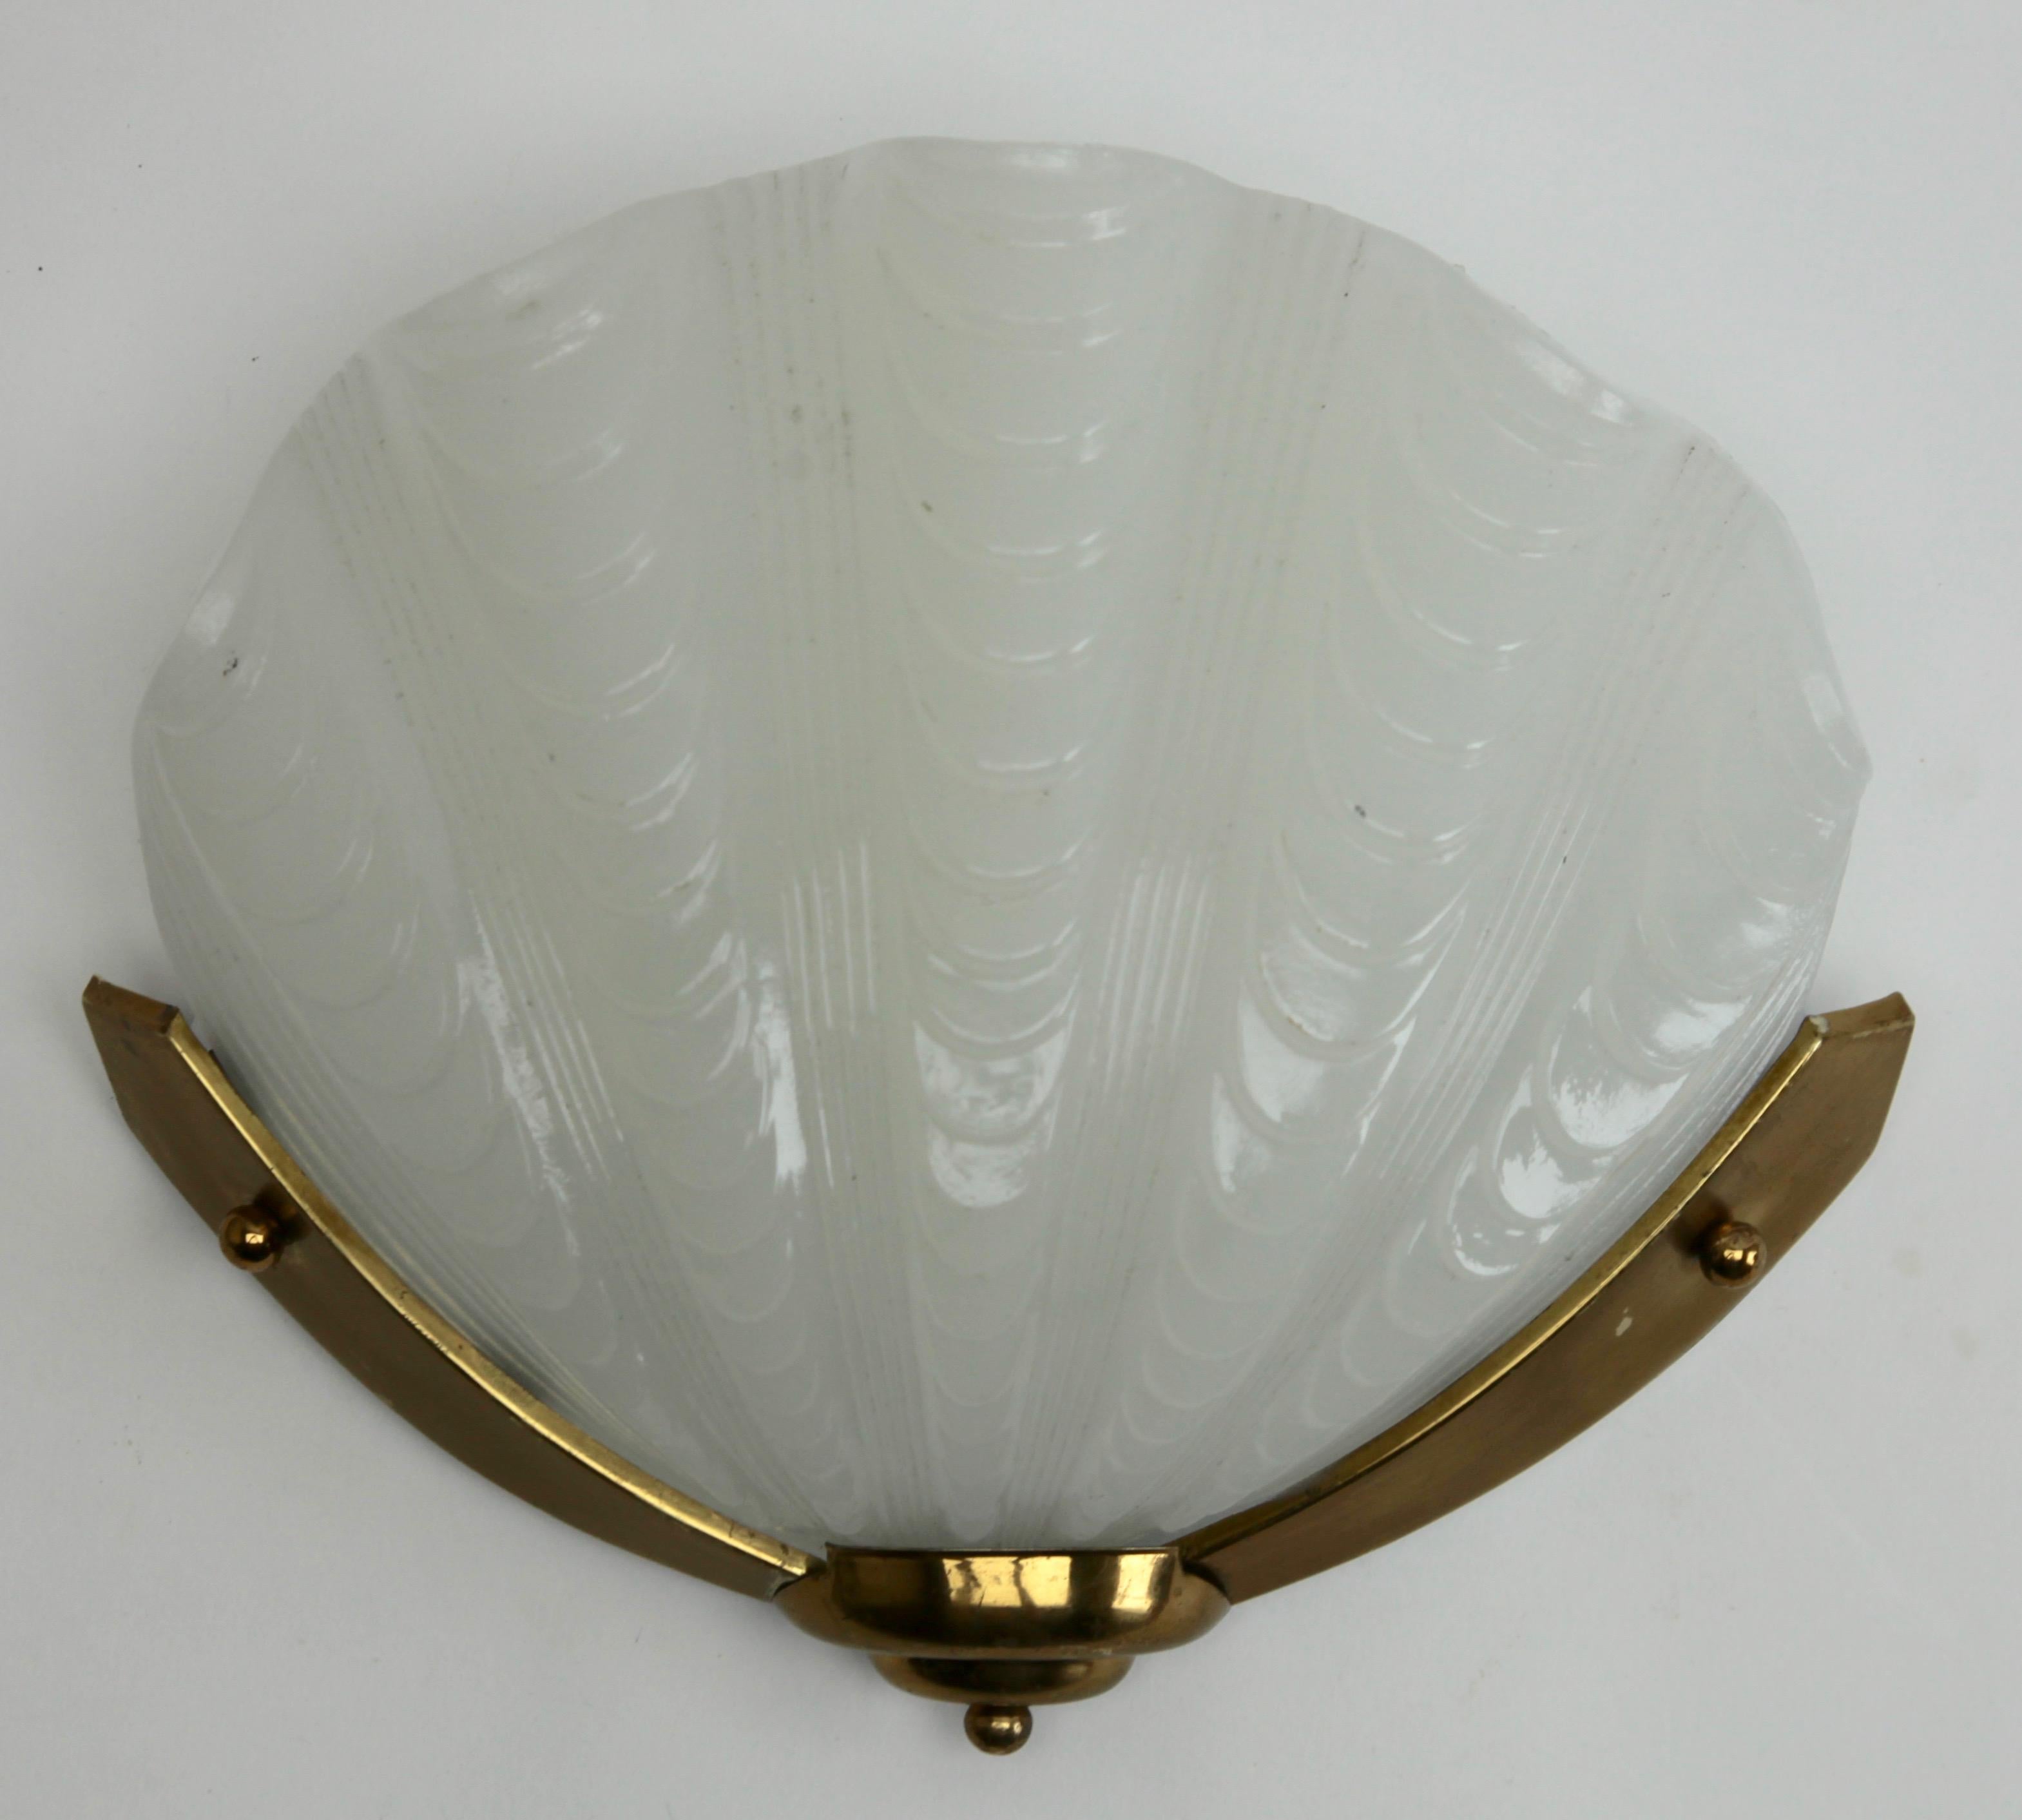 clamshell light fixture